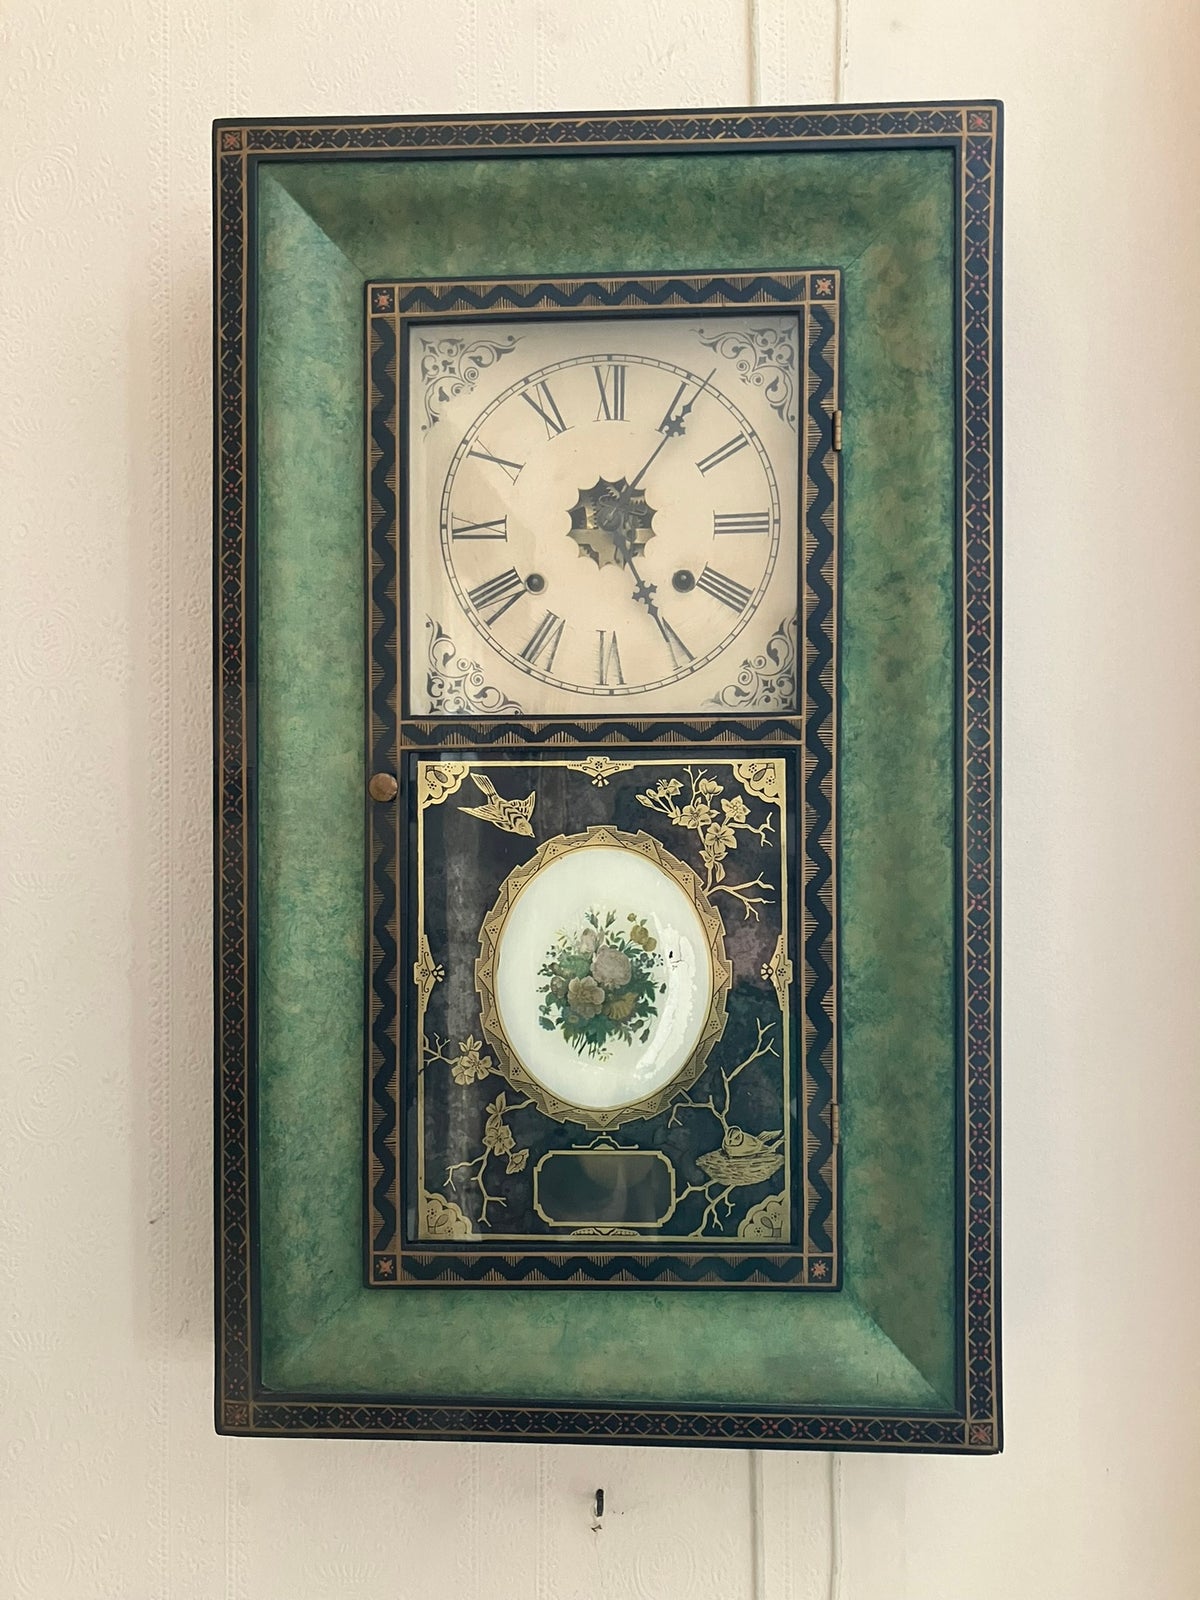 Lygteur, Waterbury Clocks